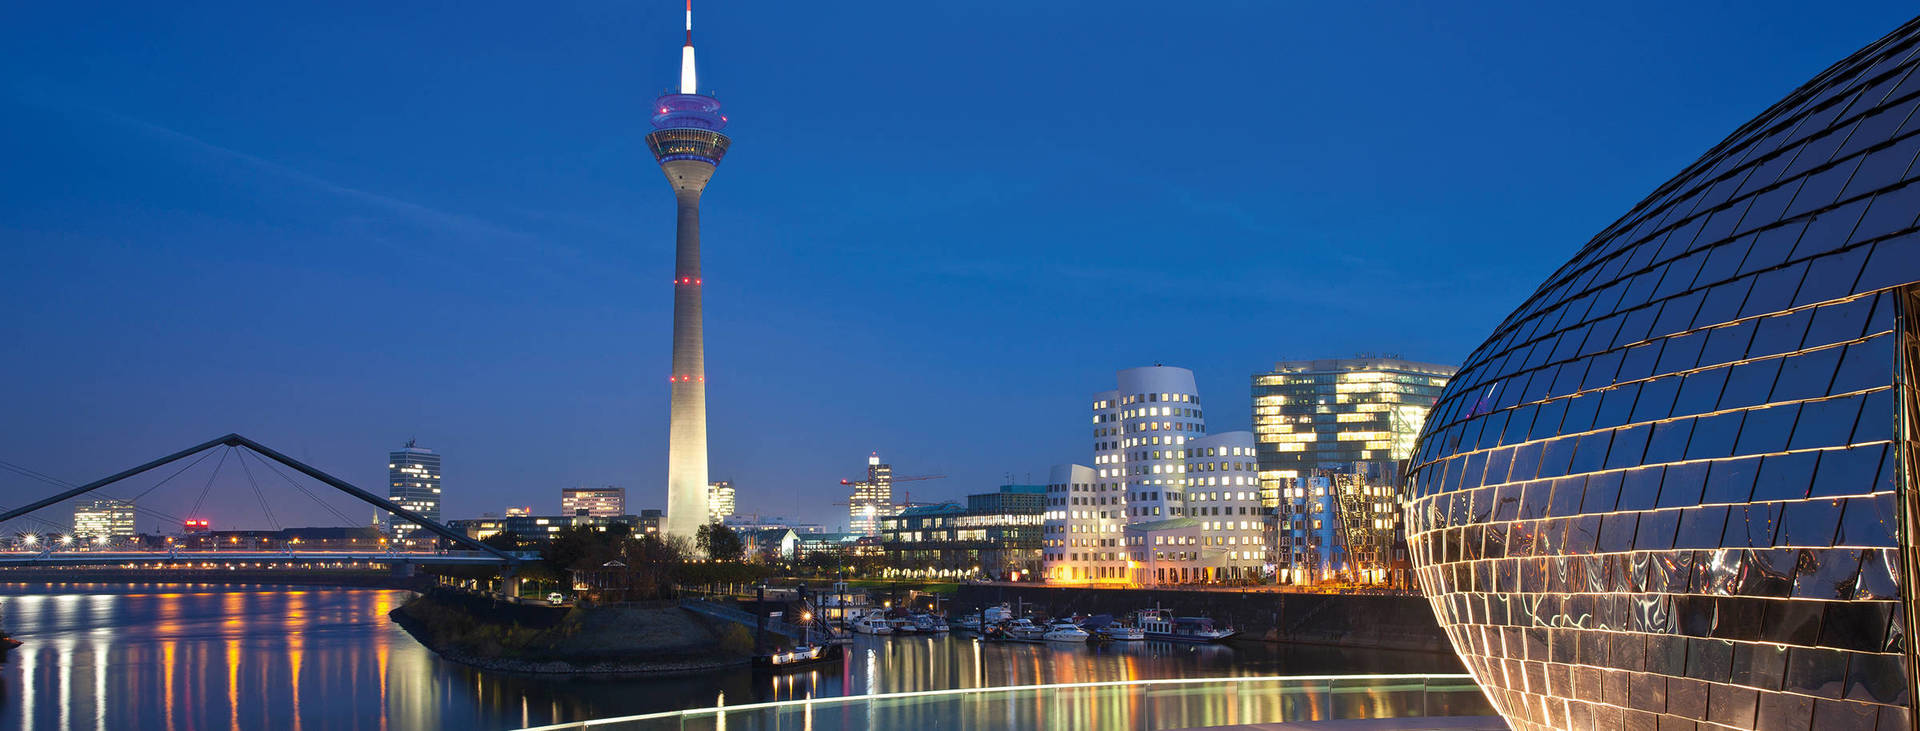 Viel zu erleben: Veranstaltungsorte in Düsseldorf